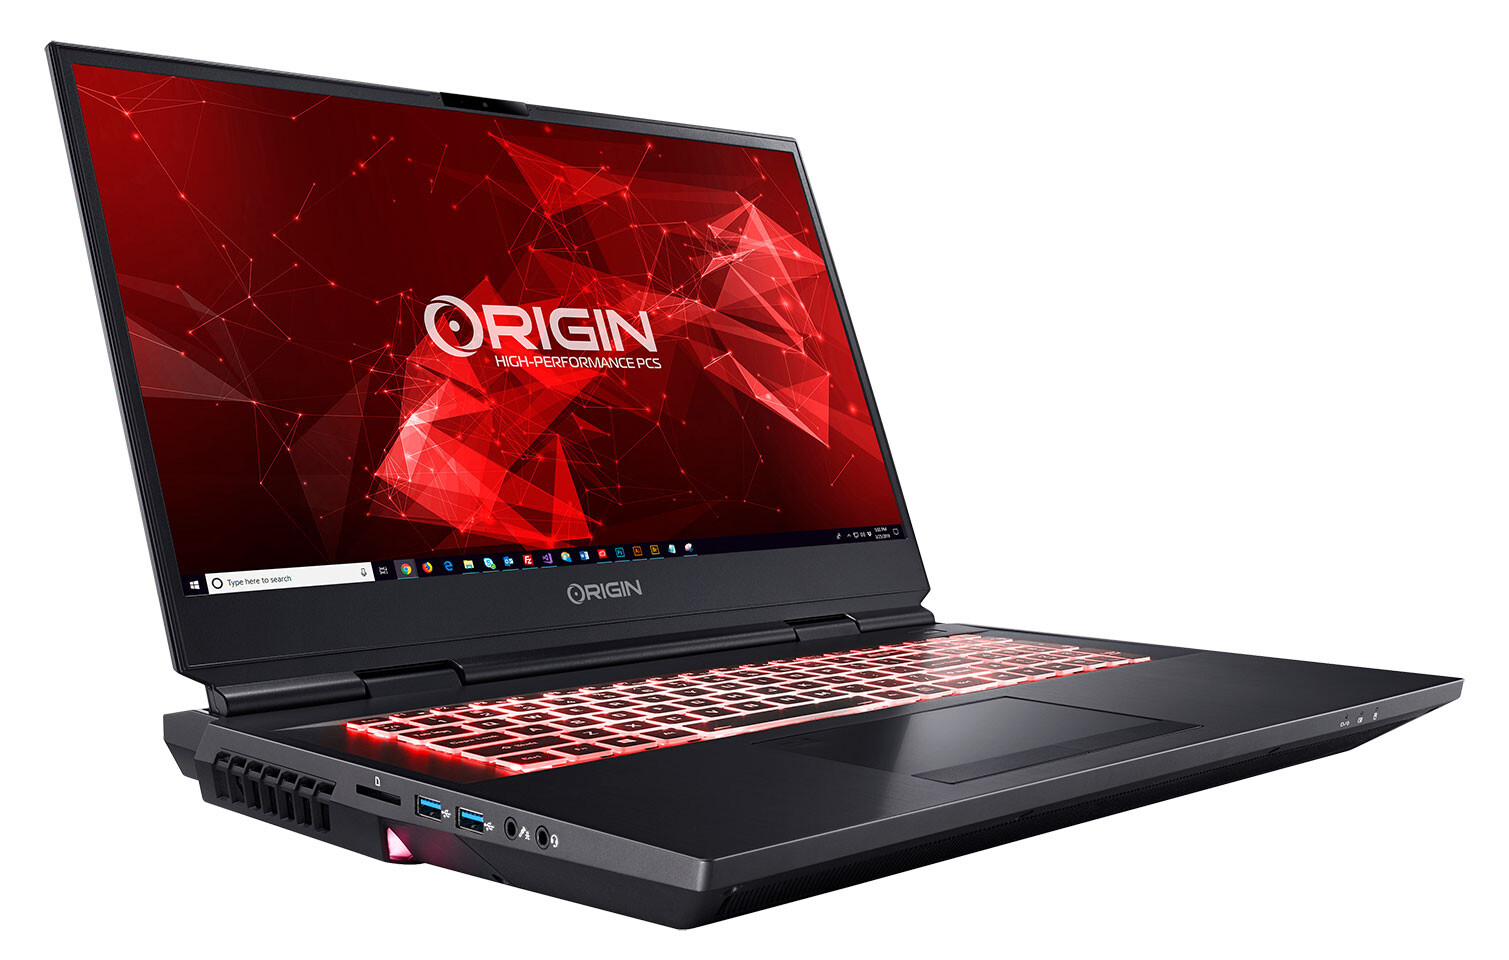 Origin PC đã cập nhật EON17-X và NS-17 với vi xử lý Intel thế hệ 10 được thiết kế dành riêng cho máy tính để bàn. Với những bổ sung mới này, sản phẩm sẽ mang đến những trải nghiệm tuyệt vời nhất cho người dùng. Hãy cùng xem hình ảnh liên quan để tìm hiểu thêm về sản phẩm này nhé.